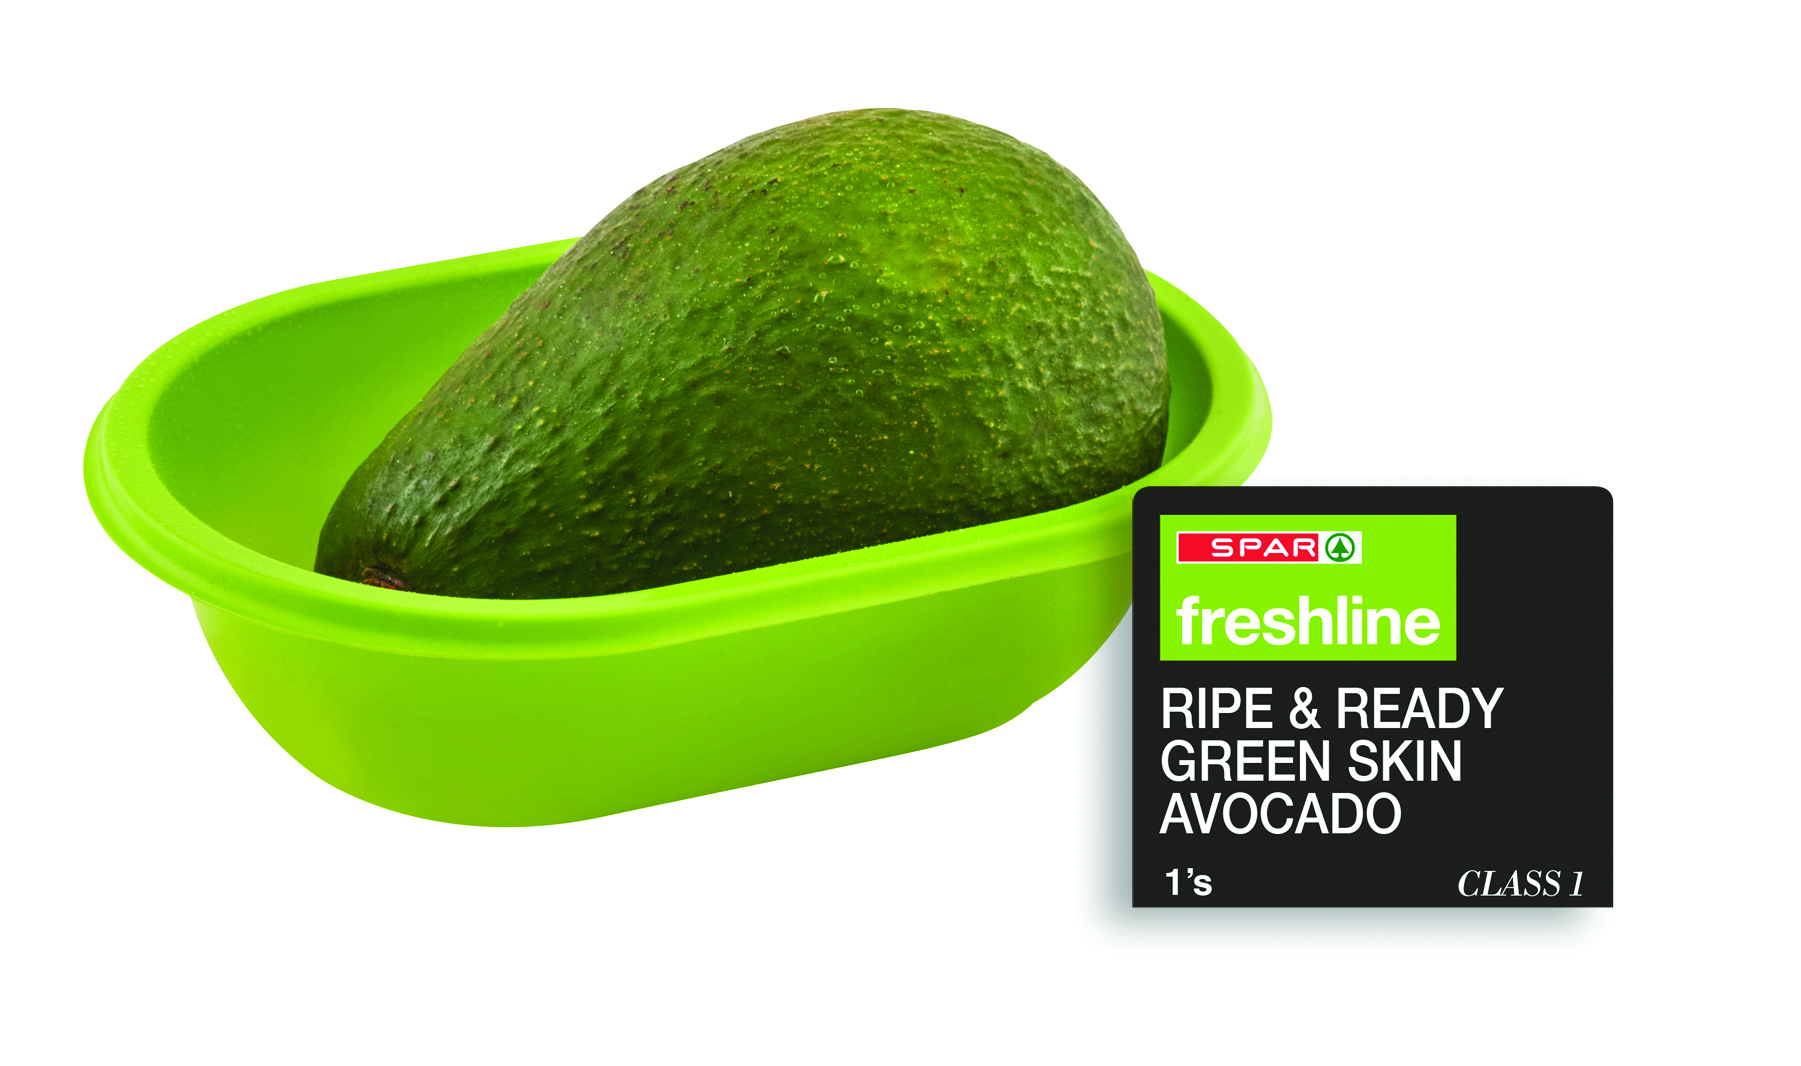 freshline green skin ripe & ready avocado  